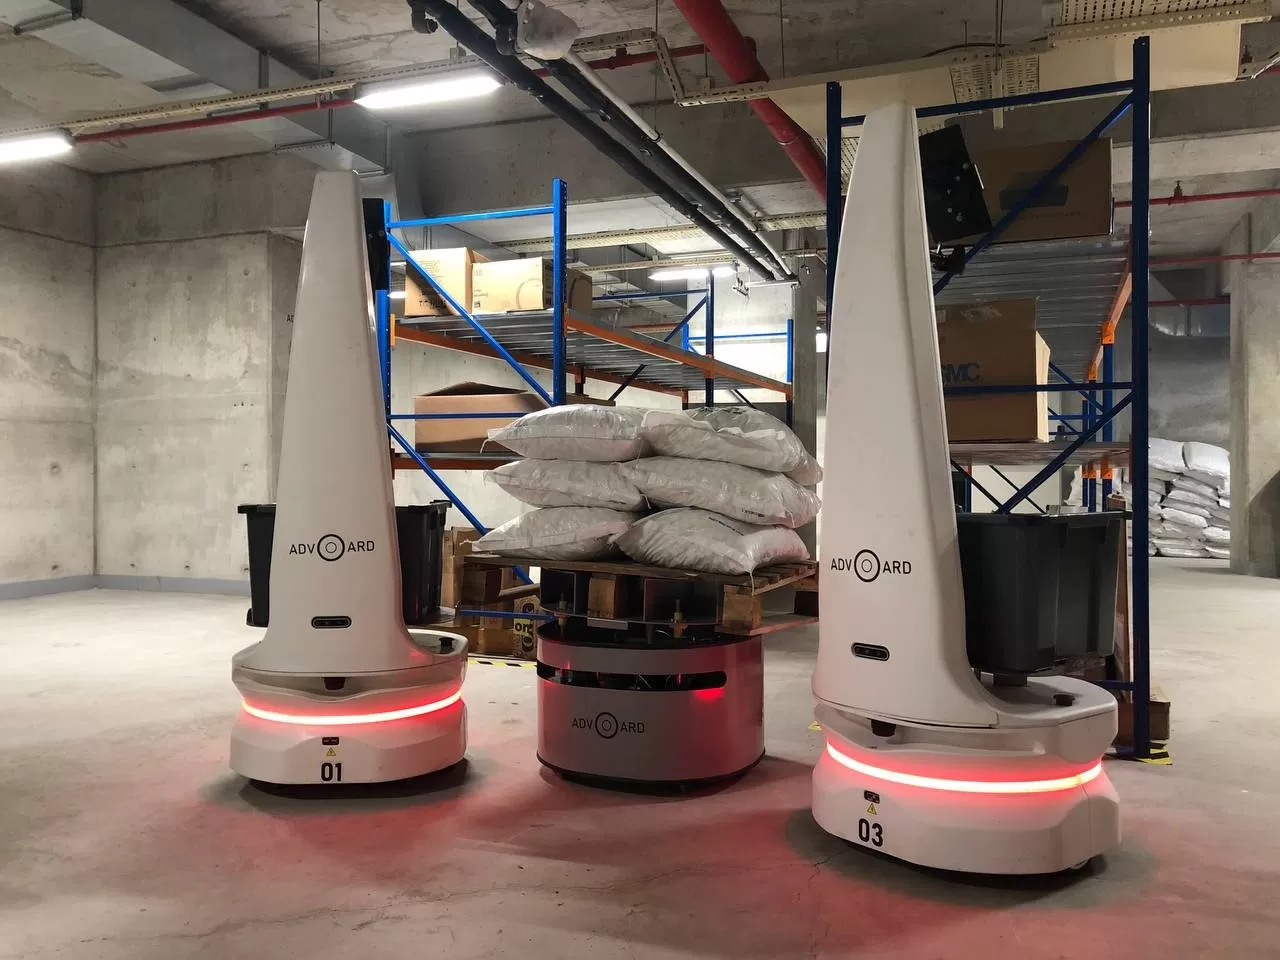 Büyük şirketlerin tedarik merkezlerinde, depolarında ya da fabrikalarında kullanılması amacıyla geliştirdiği otonom taşıma robotuyla Avrupa Birliği’nden 75 bin Euro hibe almaya hak kazandı